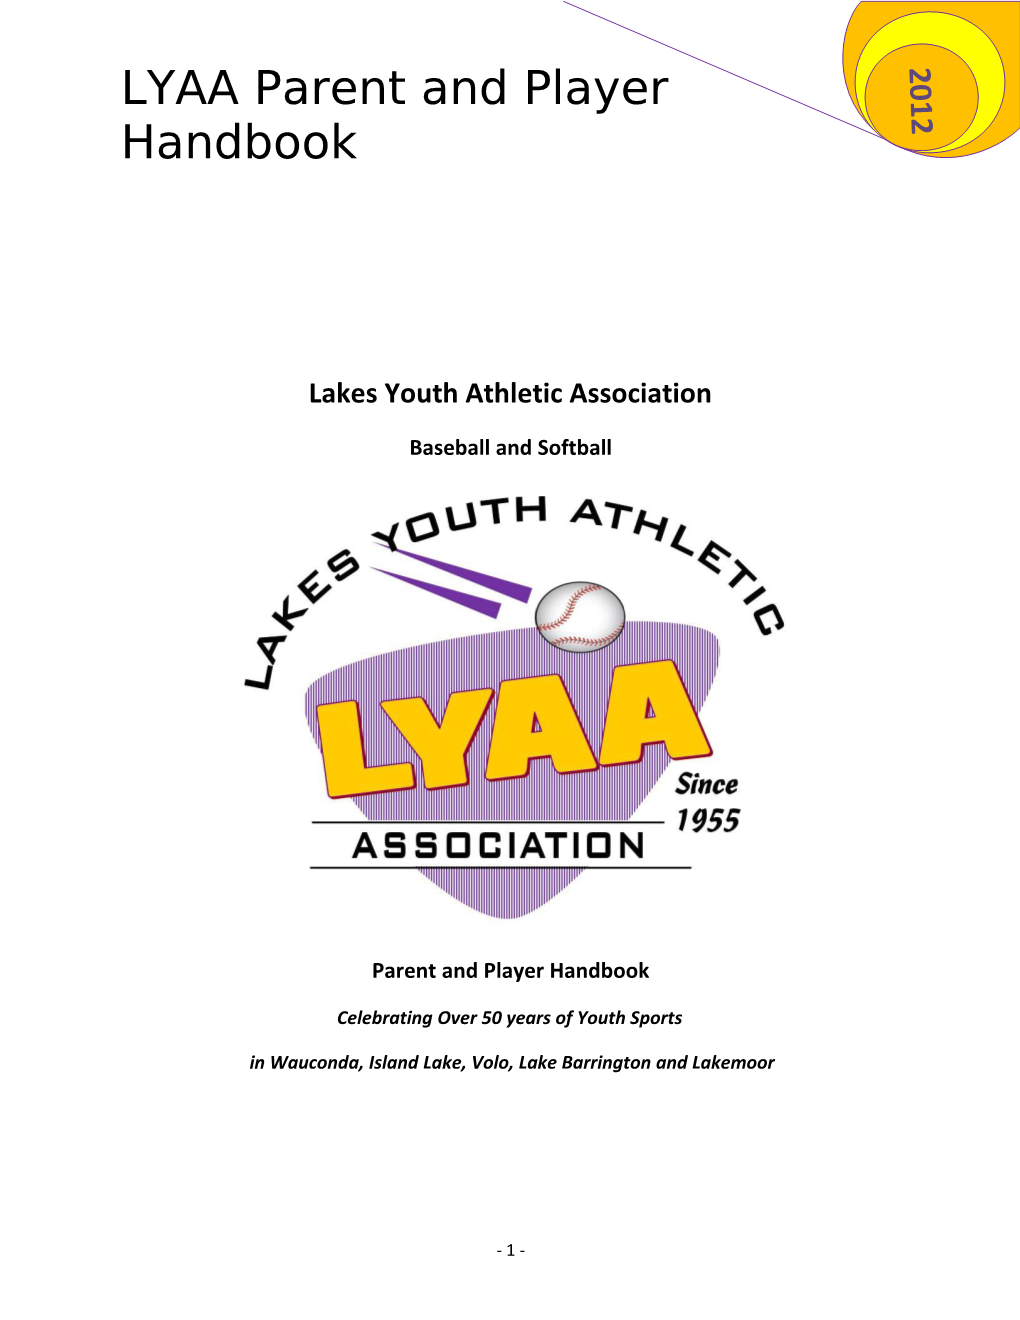 LYAA Parent and Player Handbook